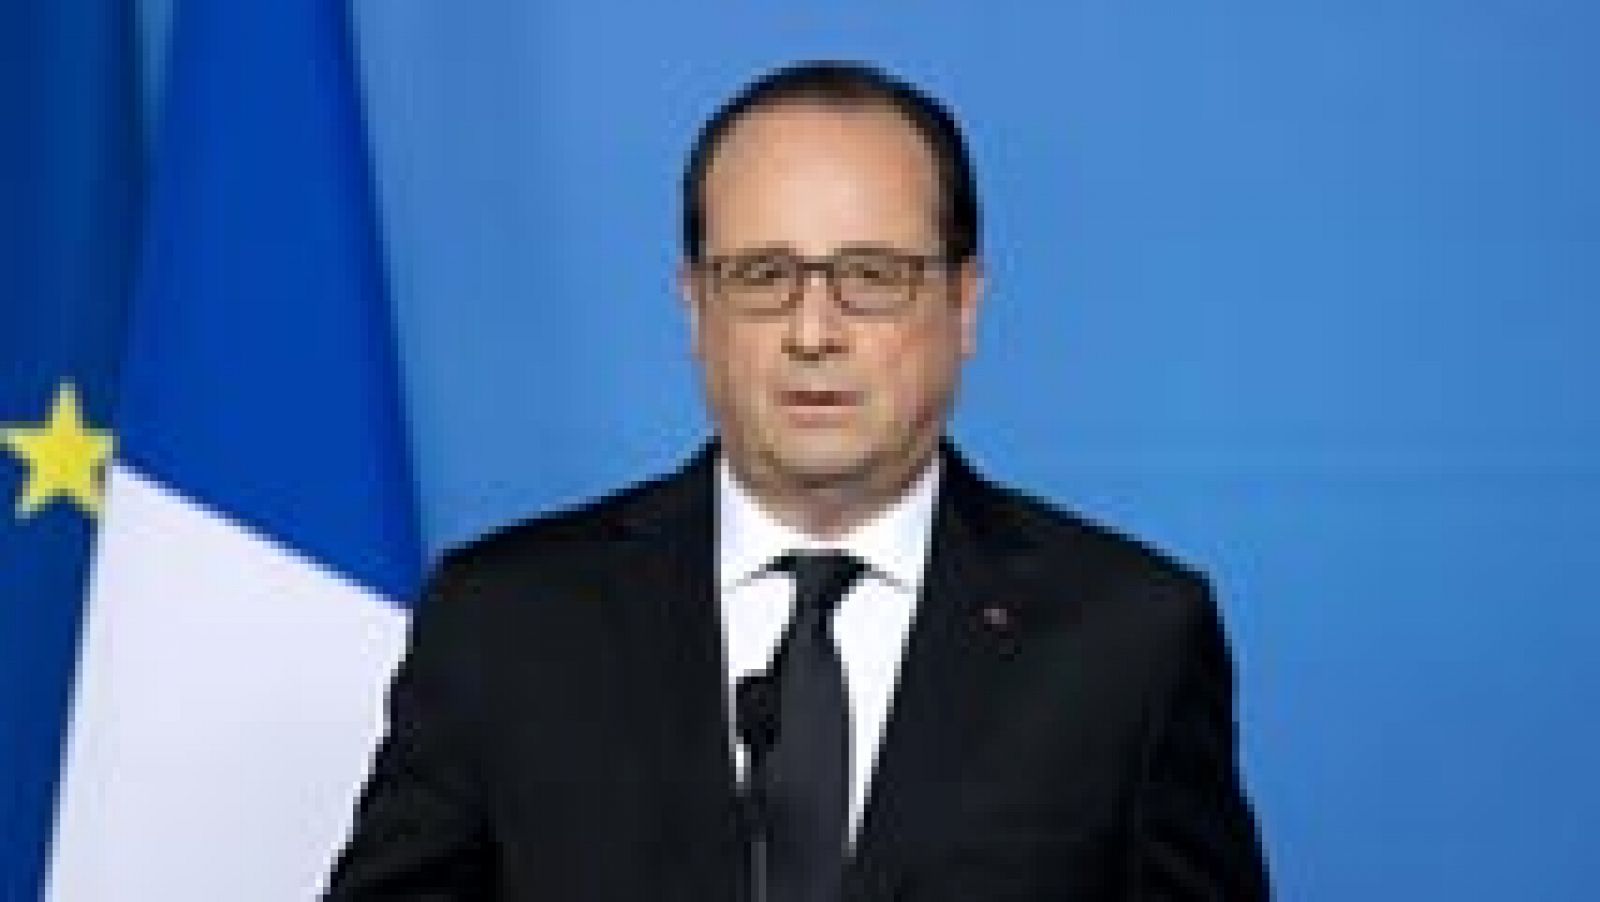 Atentado en Francia - Hollande: "No cederemos jamás ante el miedo" 